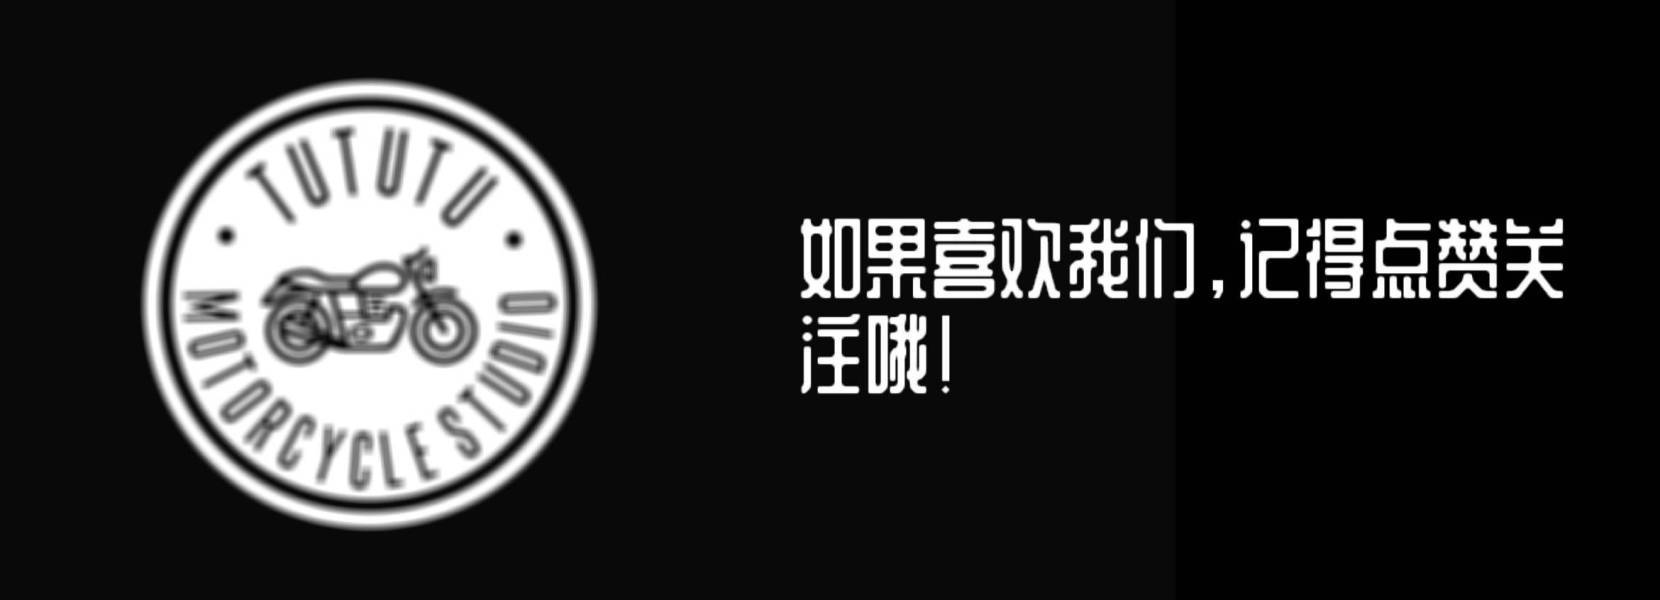 北京怀柔 “遥控车跑山” 事件处理结果来了:行政拘留+处罚